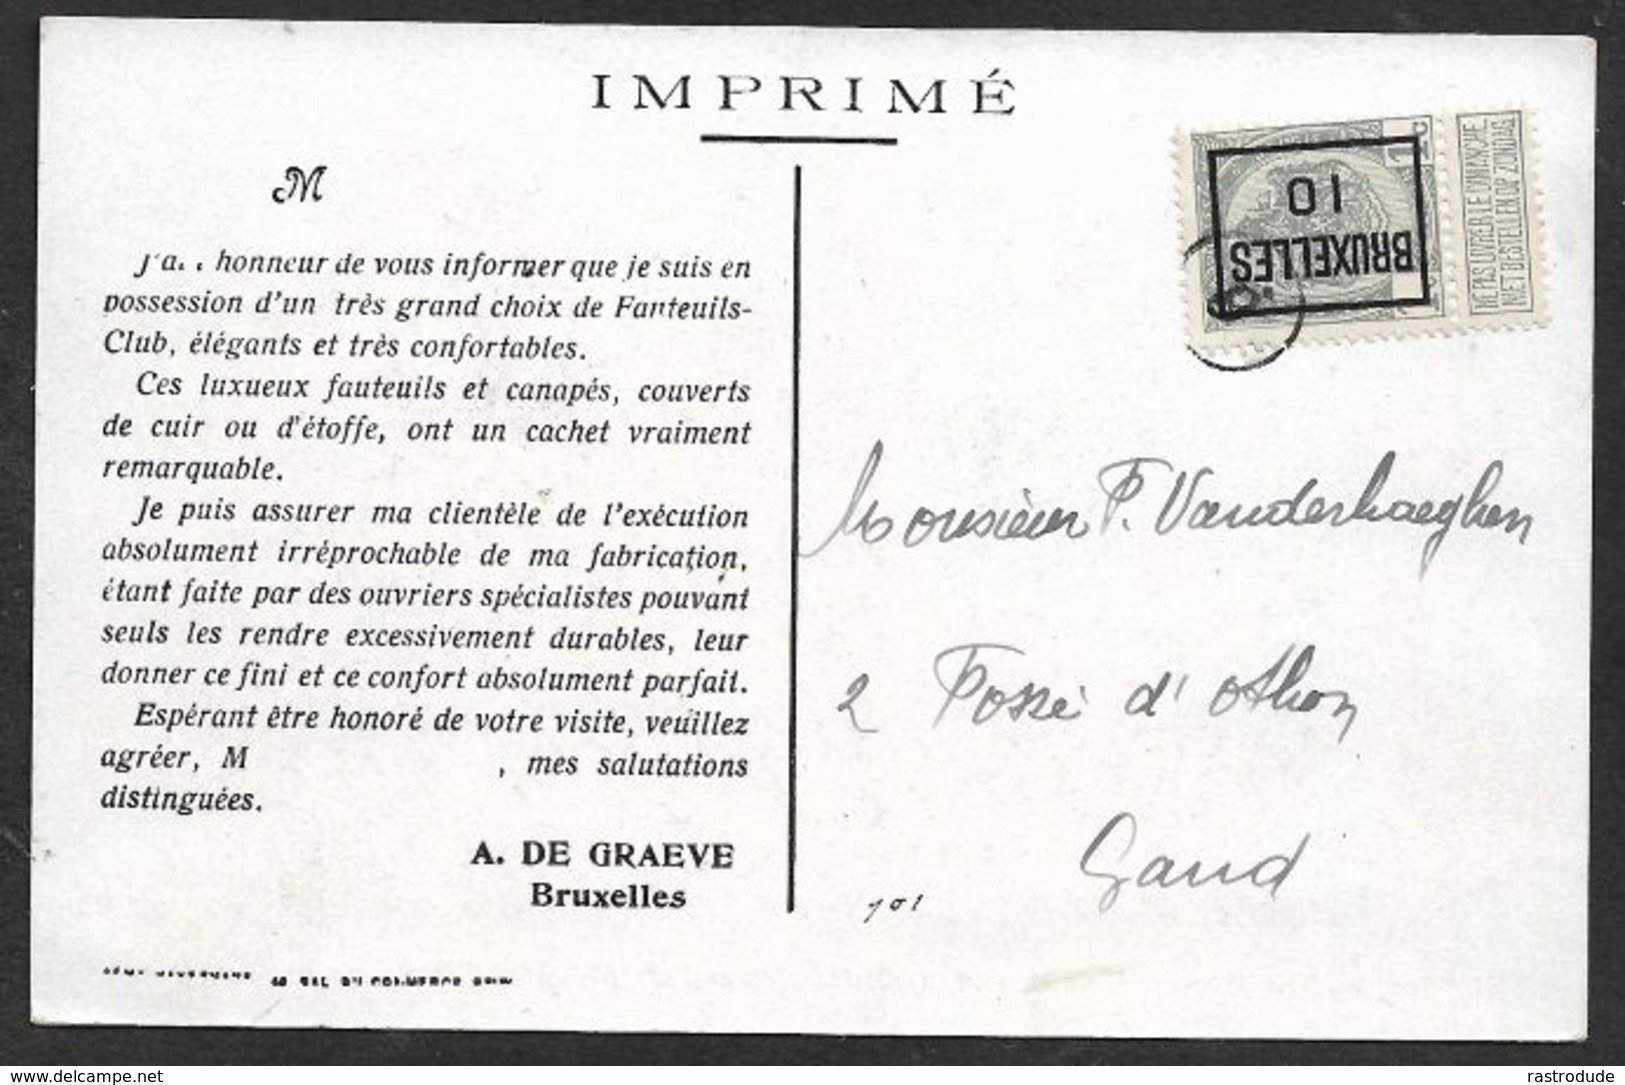 1910 BELGIQUE - IMPRIMÉ PRÉOBLITÉRÉ 1c BRUXELLES  A GAND  - LUXUEUX FAUTEUILS ET CANAPÉS - Rollini 1900-09